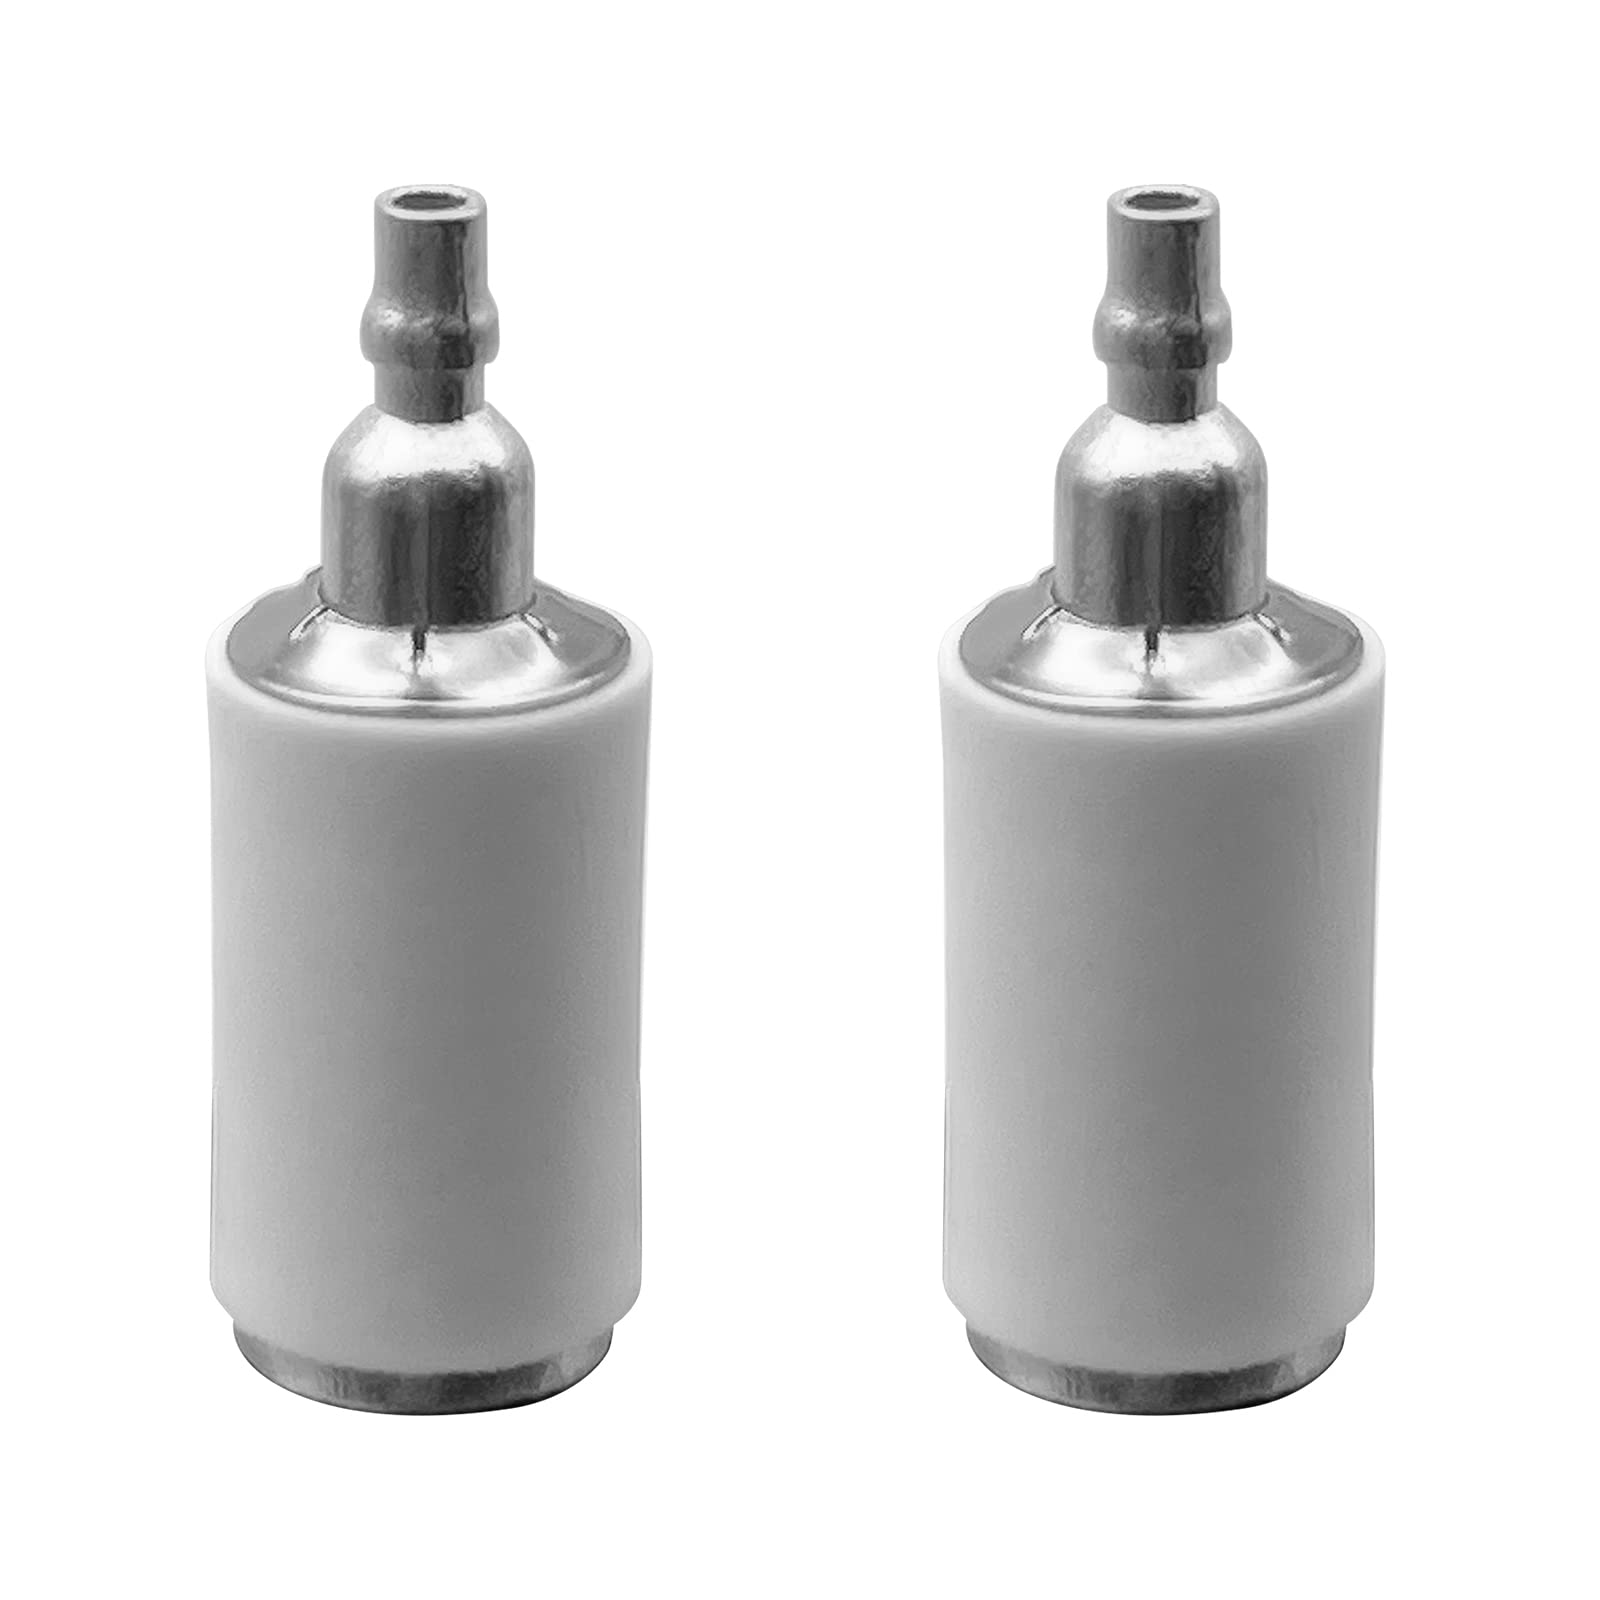 2 Stück Kraftstofffilter für Kettensäge Trimmer Blower Edger kompatibel mit Husqvarna Ersatzteil 530095646 von LiteTour